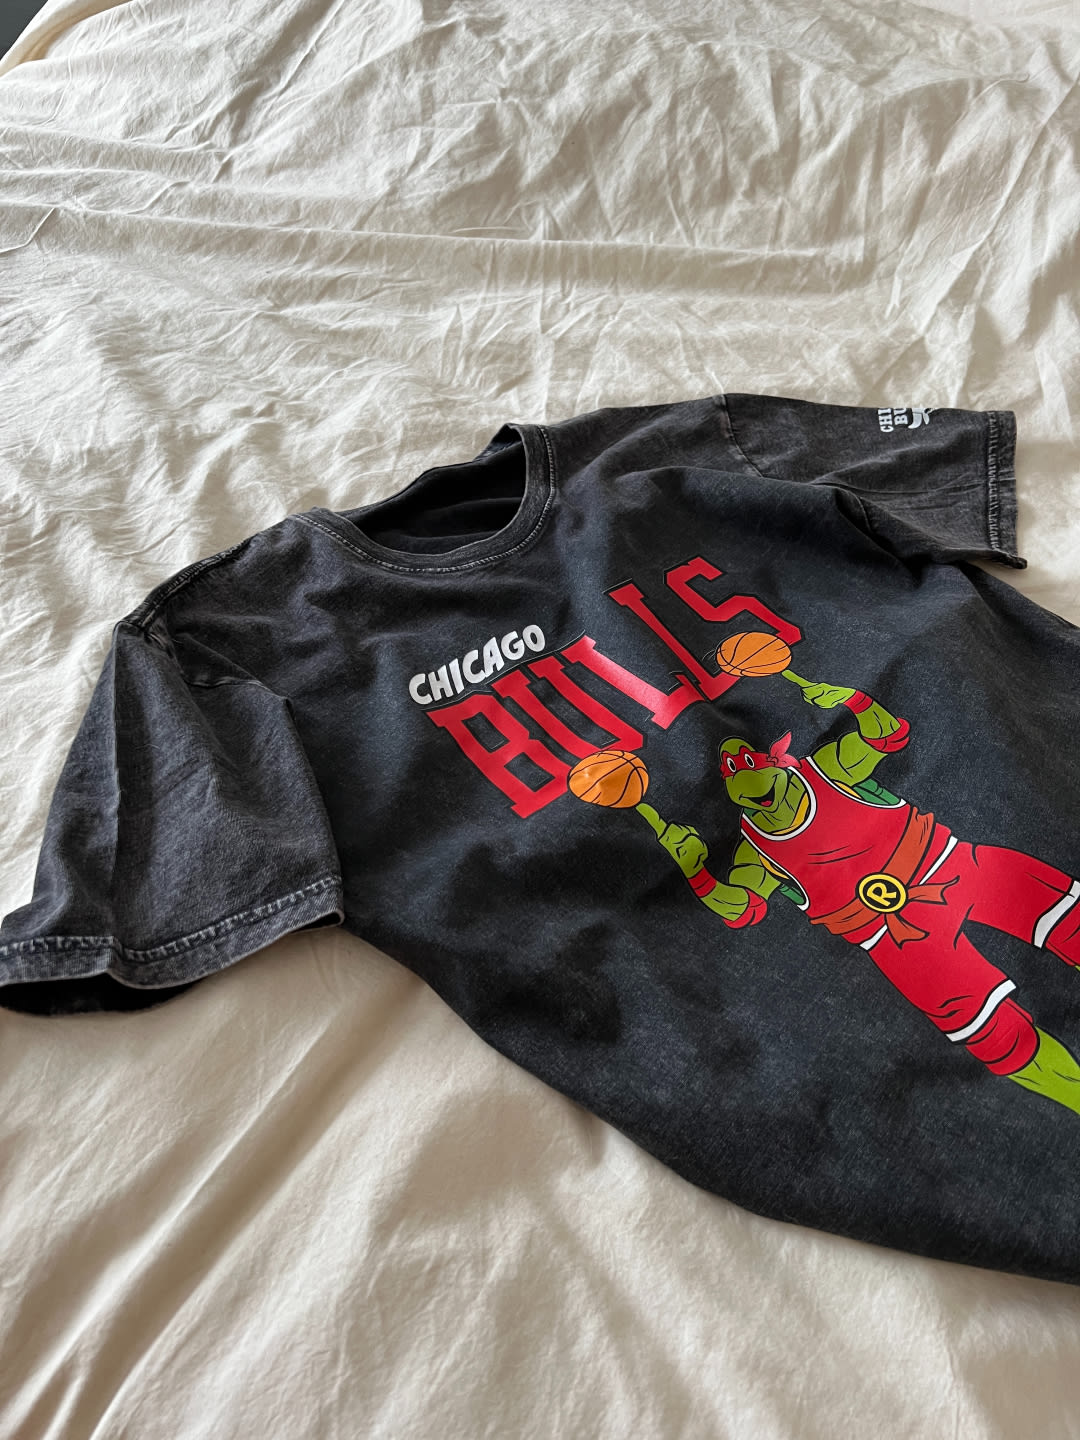 A Chicago Bulls TMNT x NBA shirt resting on a sheet.